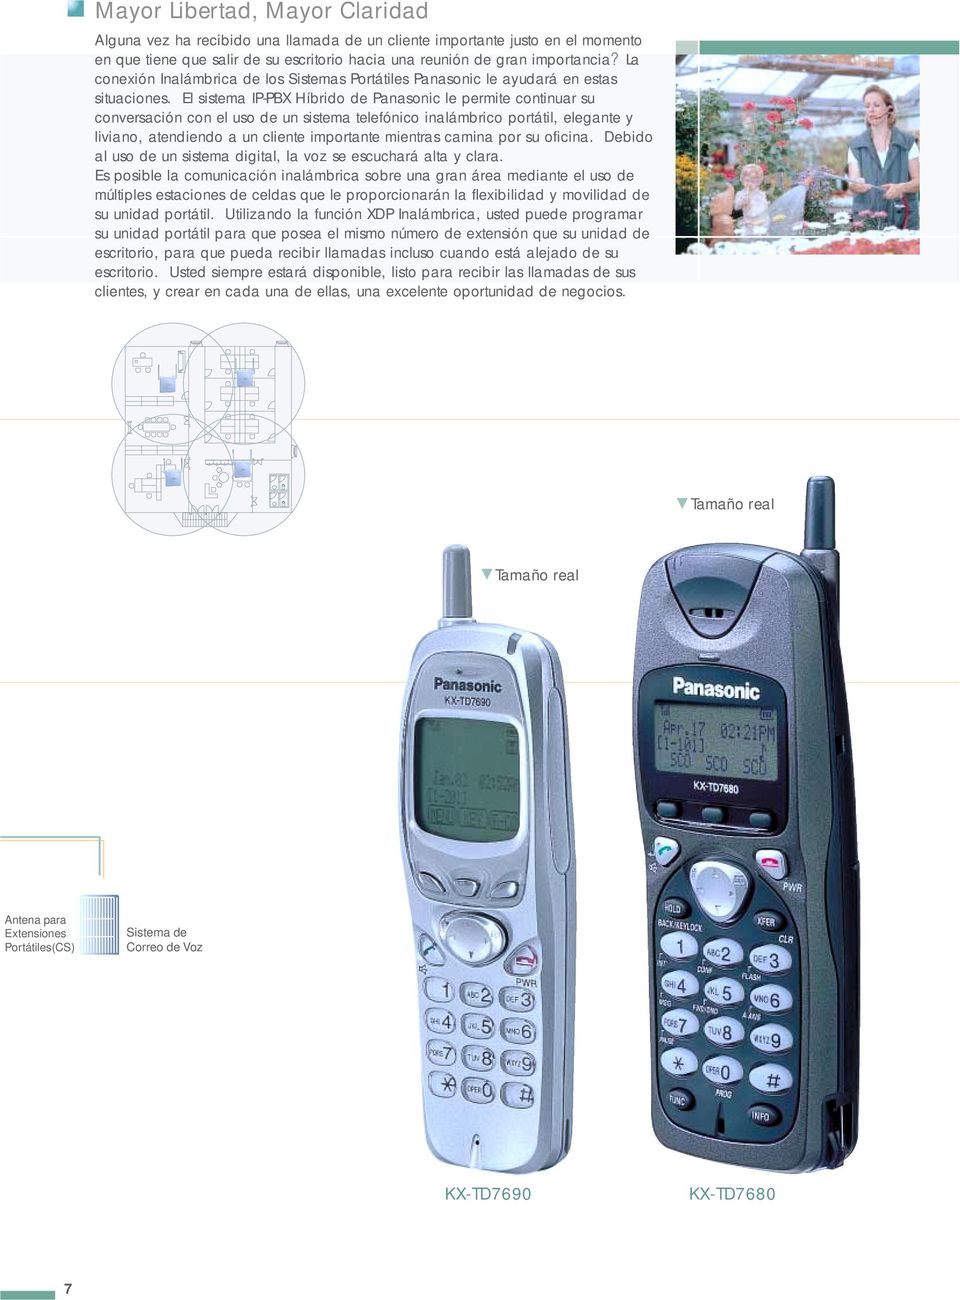 El sistema IPPBX Híbrido de Panasonic le permite continuar su conversación con el uso de un sistema telefónico inalámbrico portátil, elegante y liviano, atendiendo a un cliente importante mientras